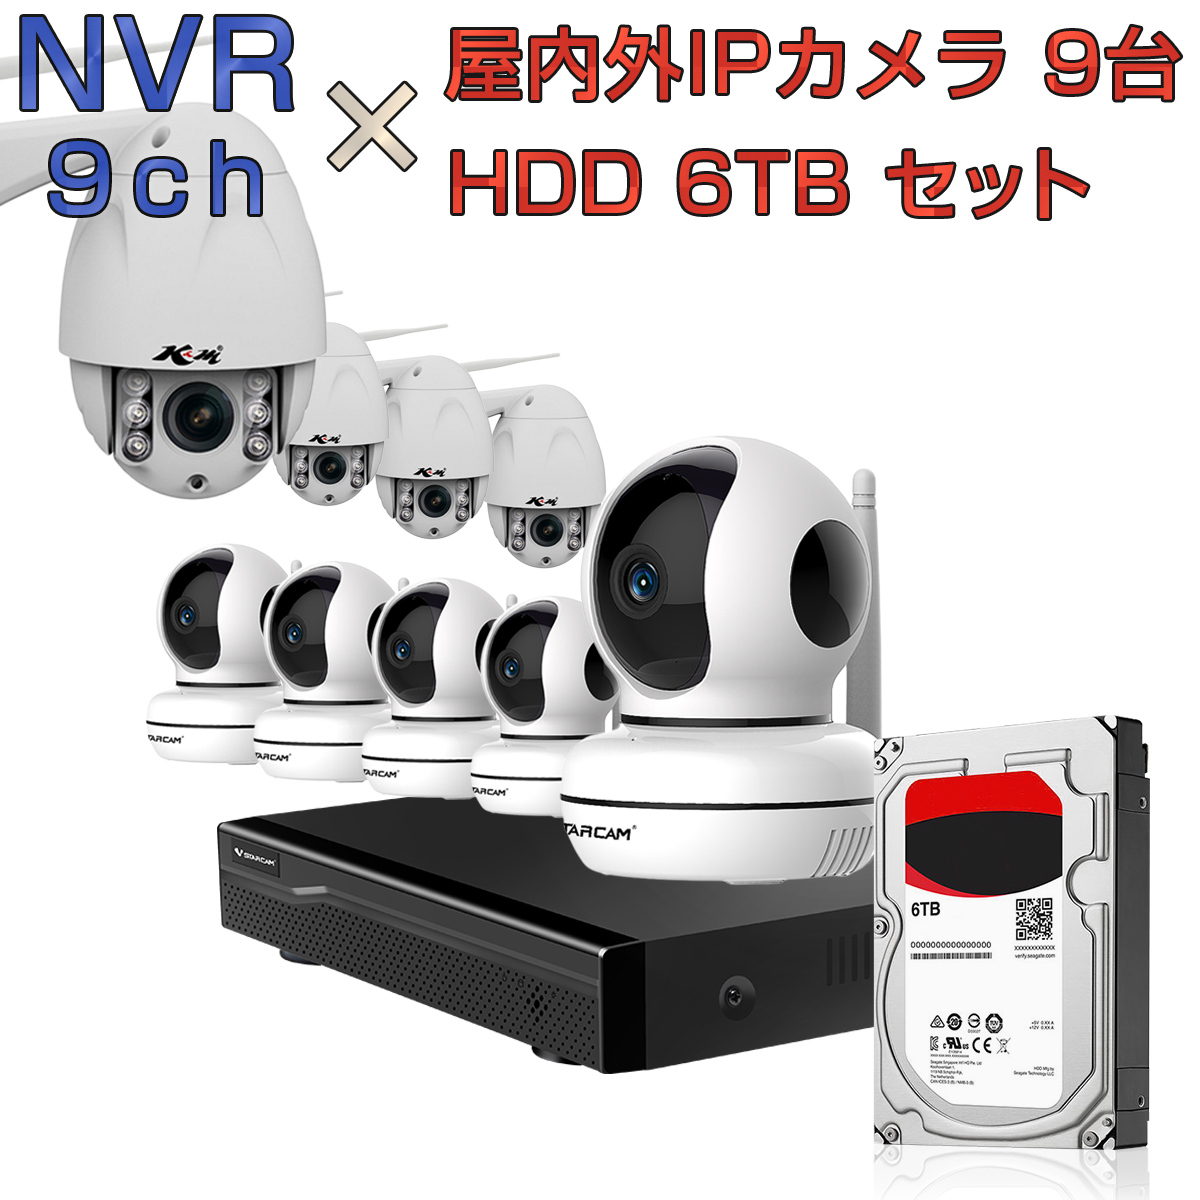 防犯カメラ ワイヤレス wifi 簡単 設置 連続録画 9台を同時に録画可能 ルーター経由接続 ONVIF形式 NVR ネットワークビデオレコーダー 9ch HDD6TB内蔵 C46S C34S 2K 1080p 200万画素カメラ 9台セット ONVIF形式 スマホ対応 遠隔監視 FHD 動体検知 同時出力 録音対応 H.265+ IPカメラレコーダー監視システム PSE認証 6ヶ月保証